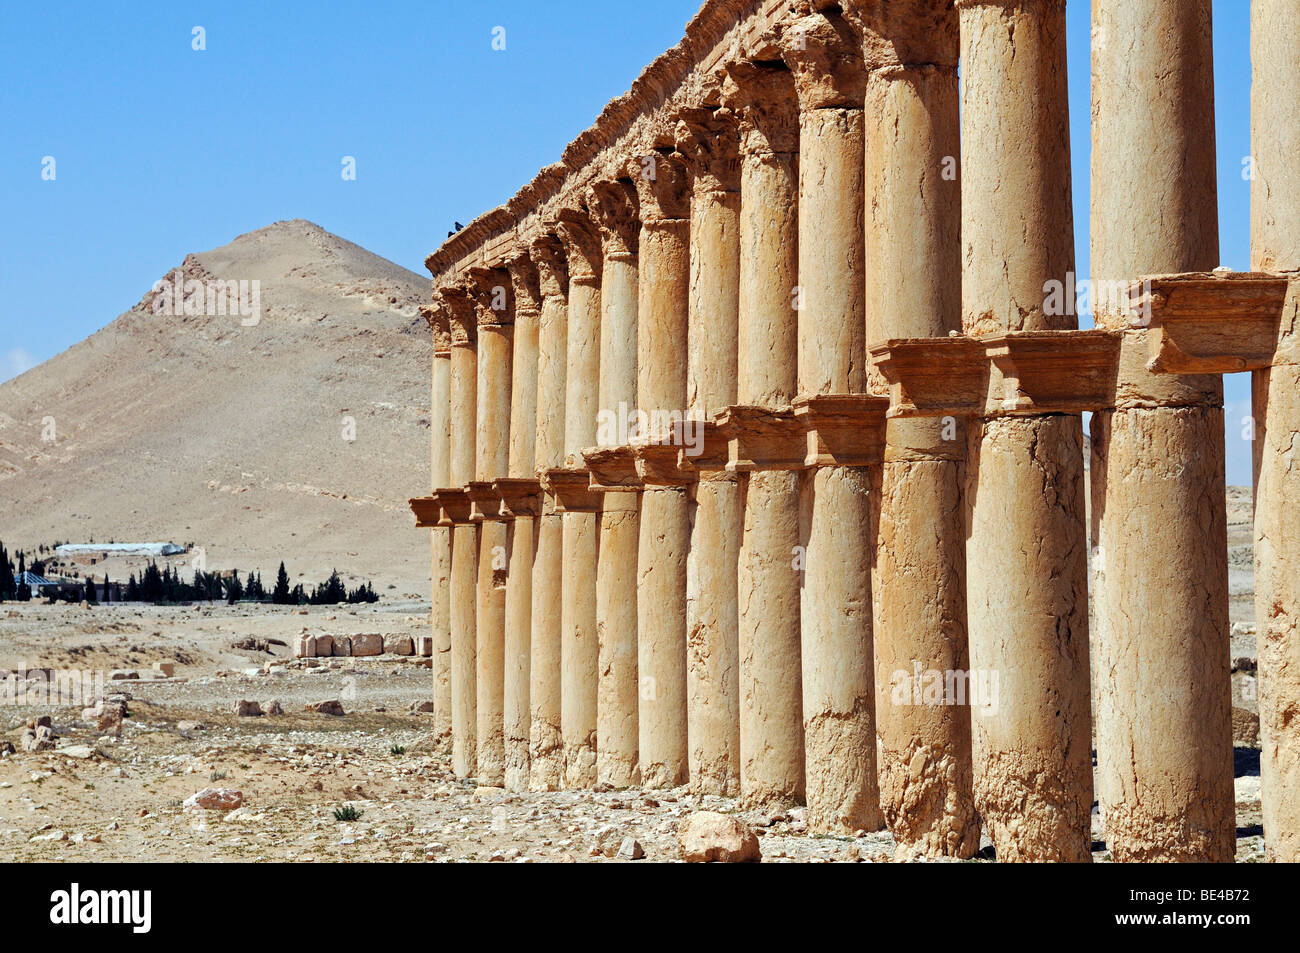 Säulenreihe in den Ruinen von Palmyra archäologische Stätte, Tadmur, Syrien, Asien Stockfoto